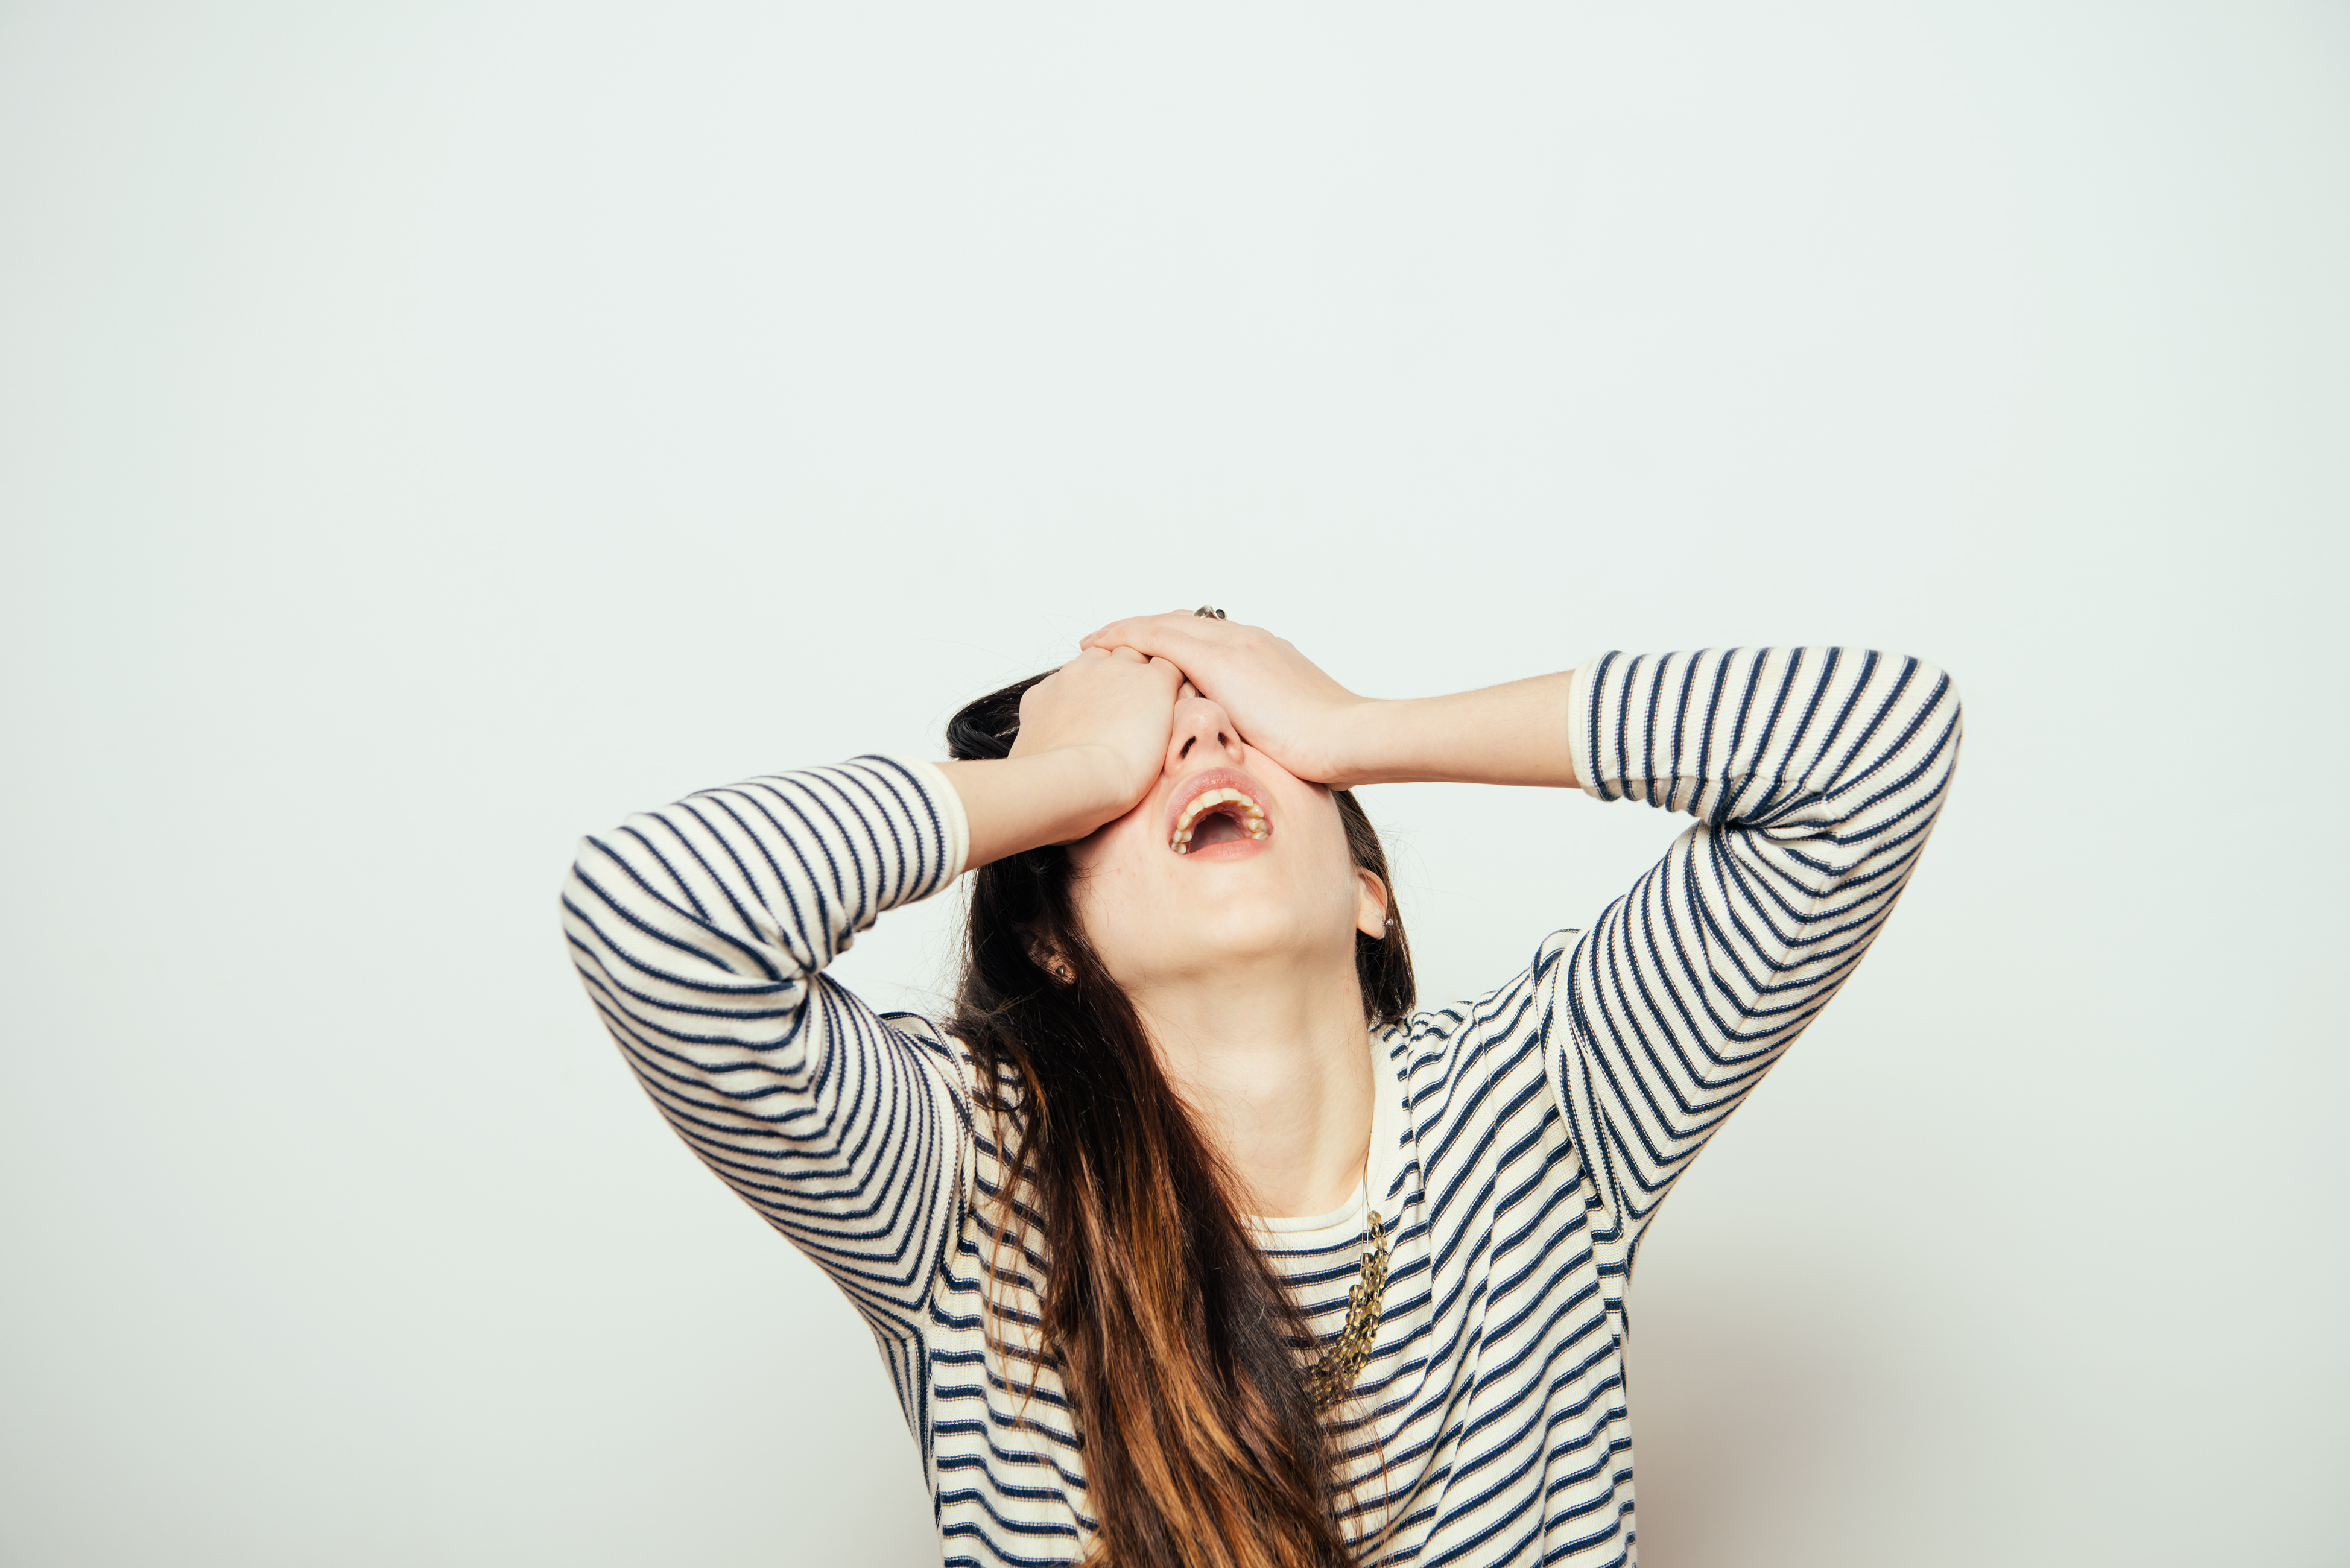 Femme exaspérée se tenant les yeux fermés | Source : Shutterstock